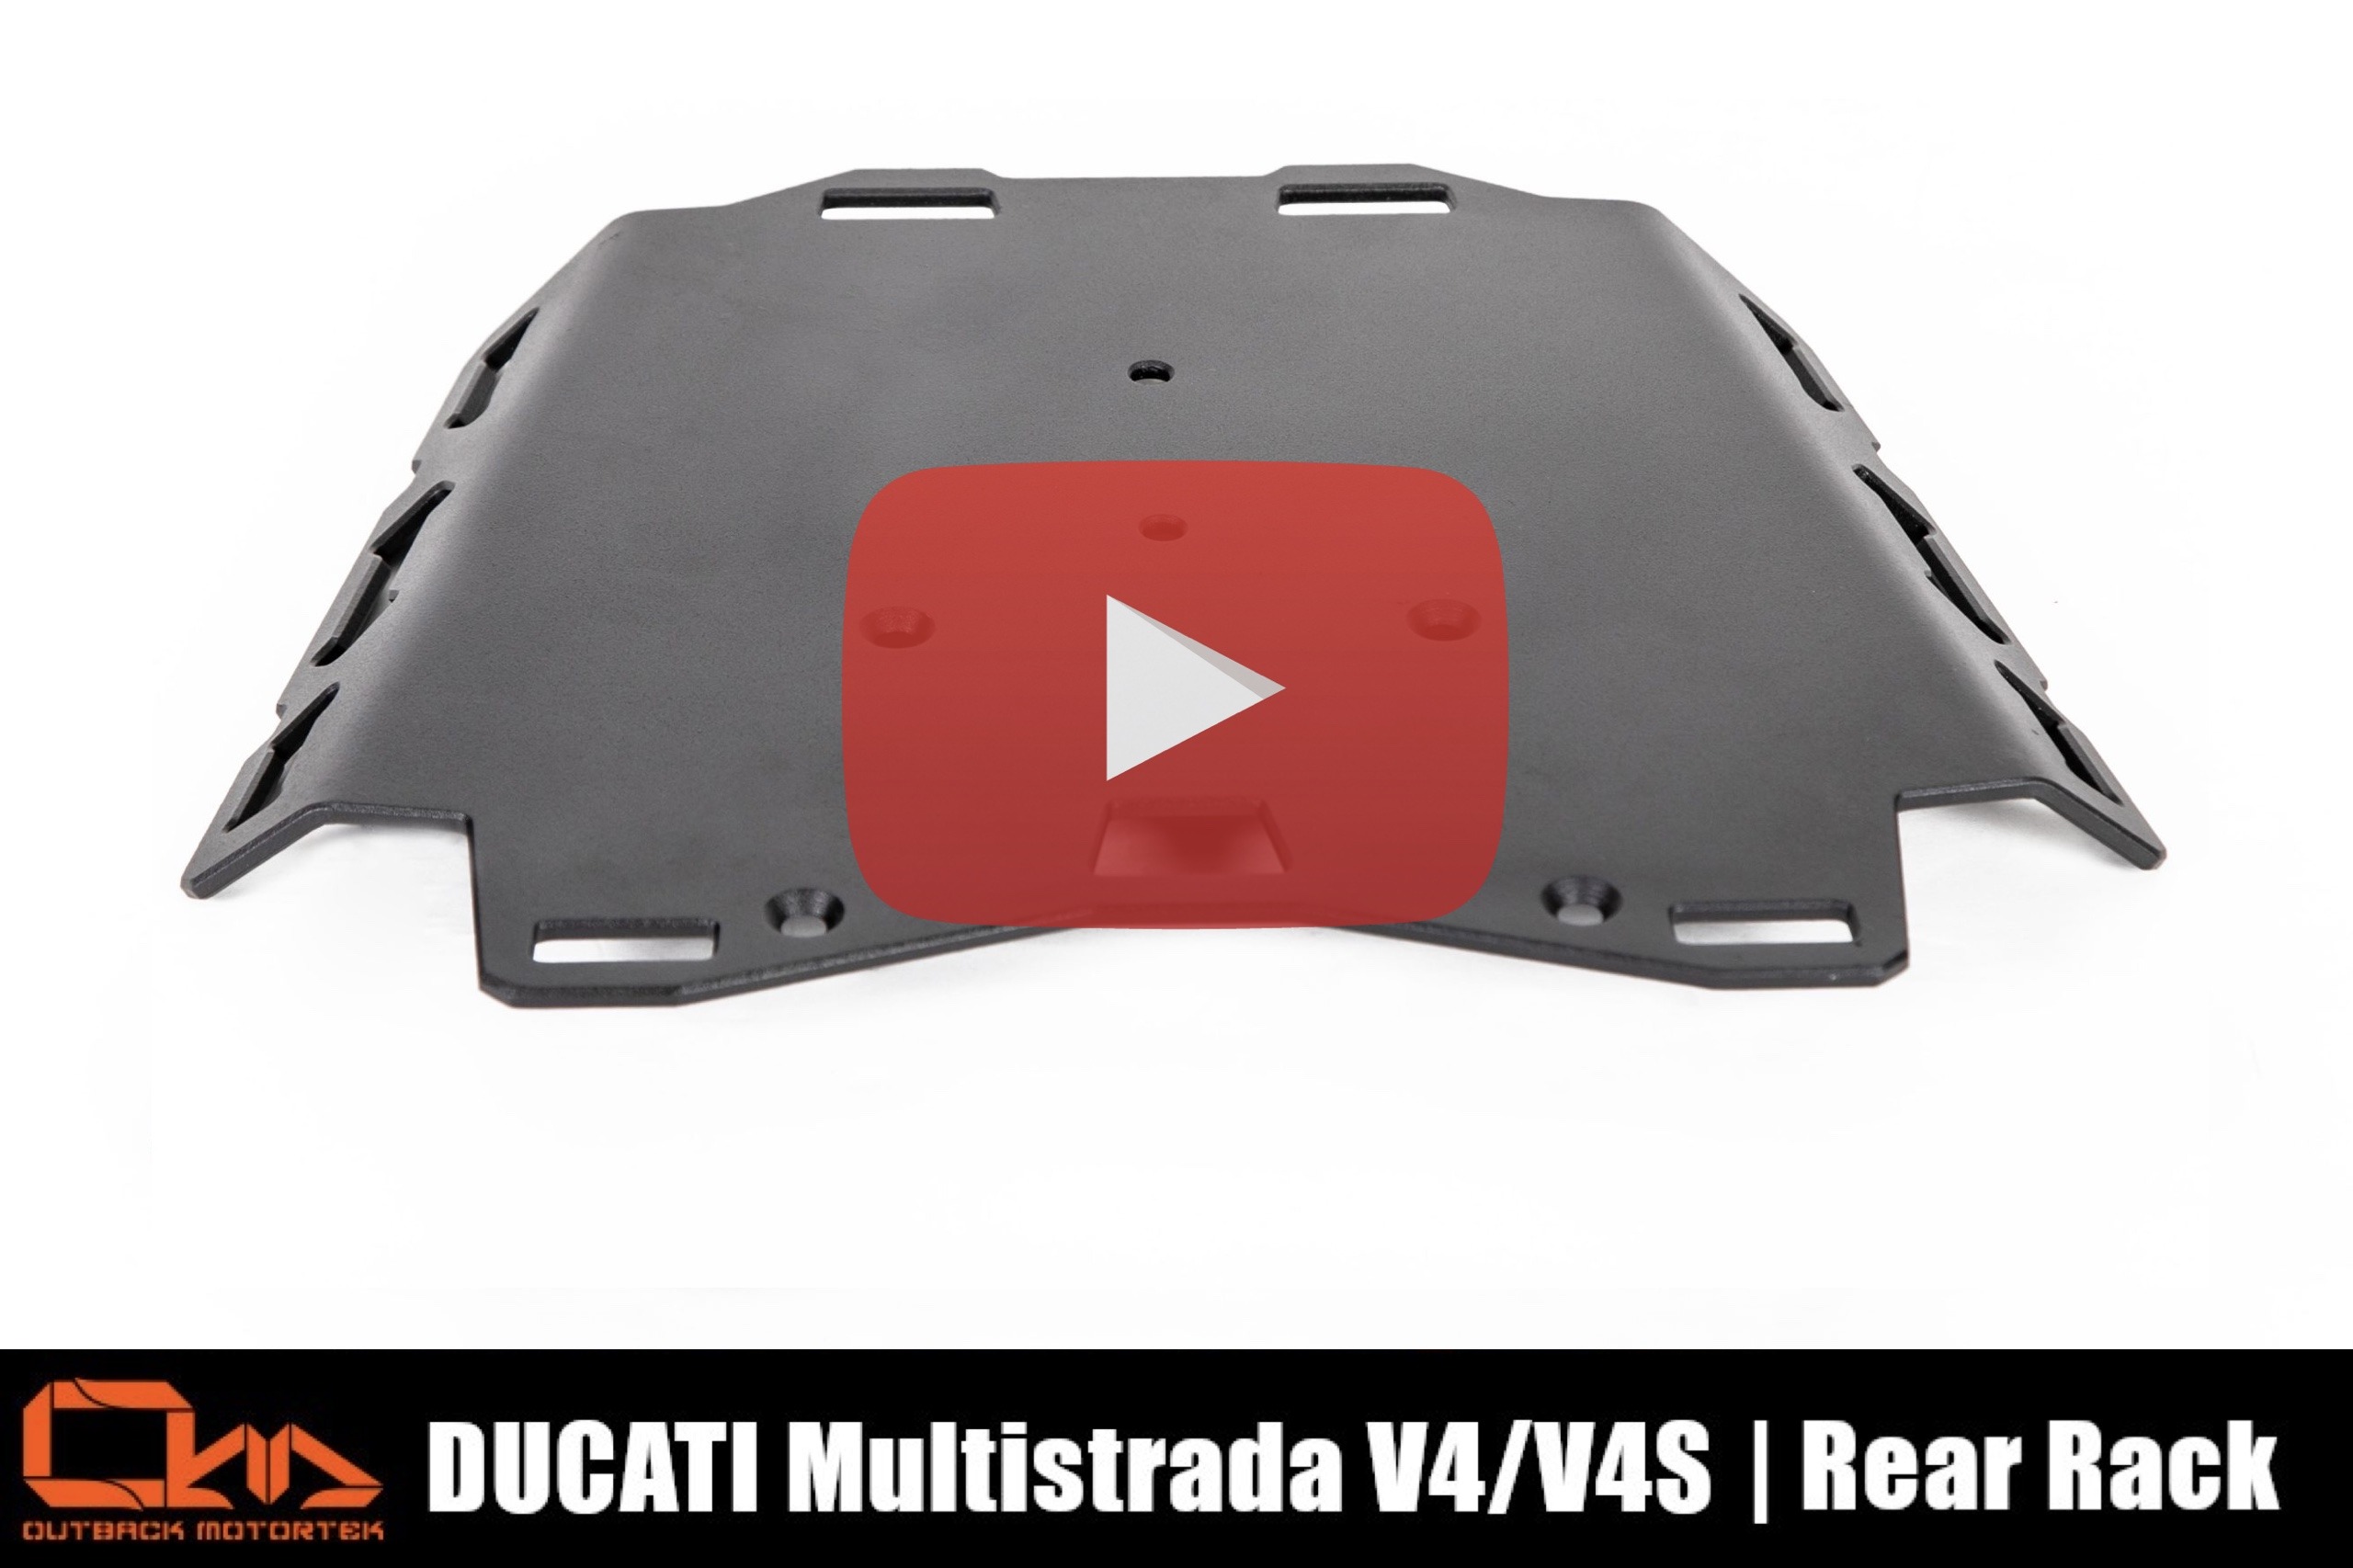 Ducati Multistrada V4 Piastra Portaborsa Posteriore Installation Video